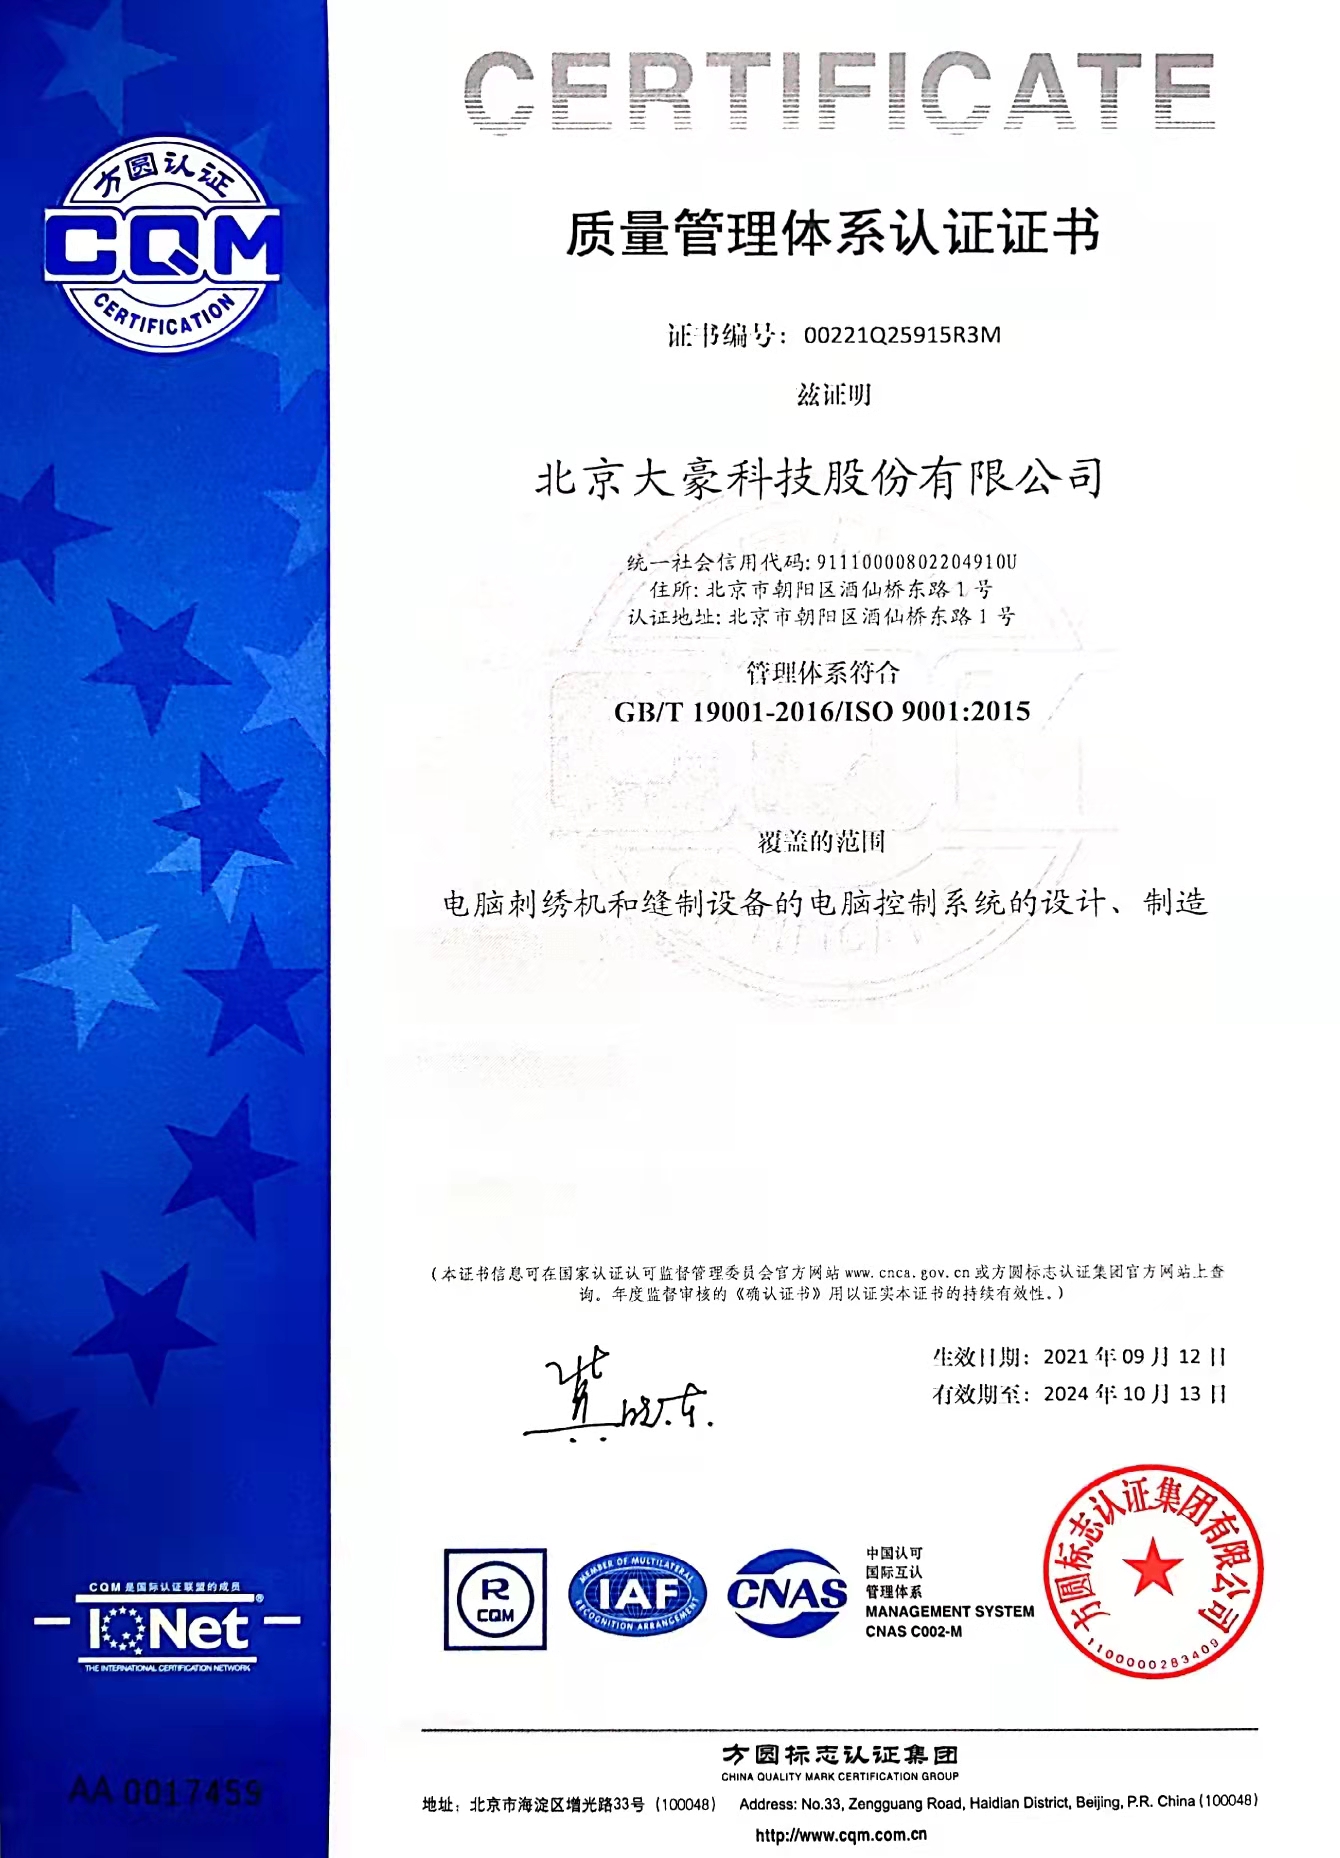 红宝石hbs平台官方科技质量管理体系证书-中文版